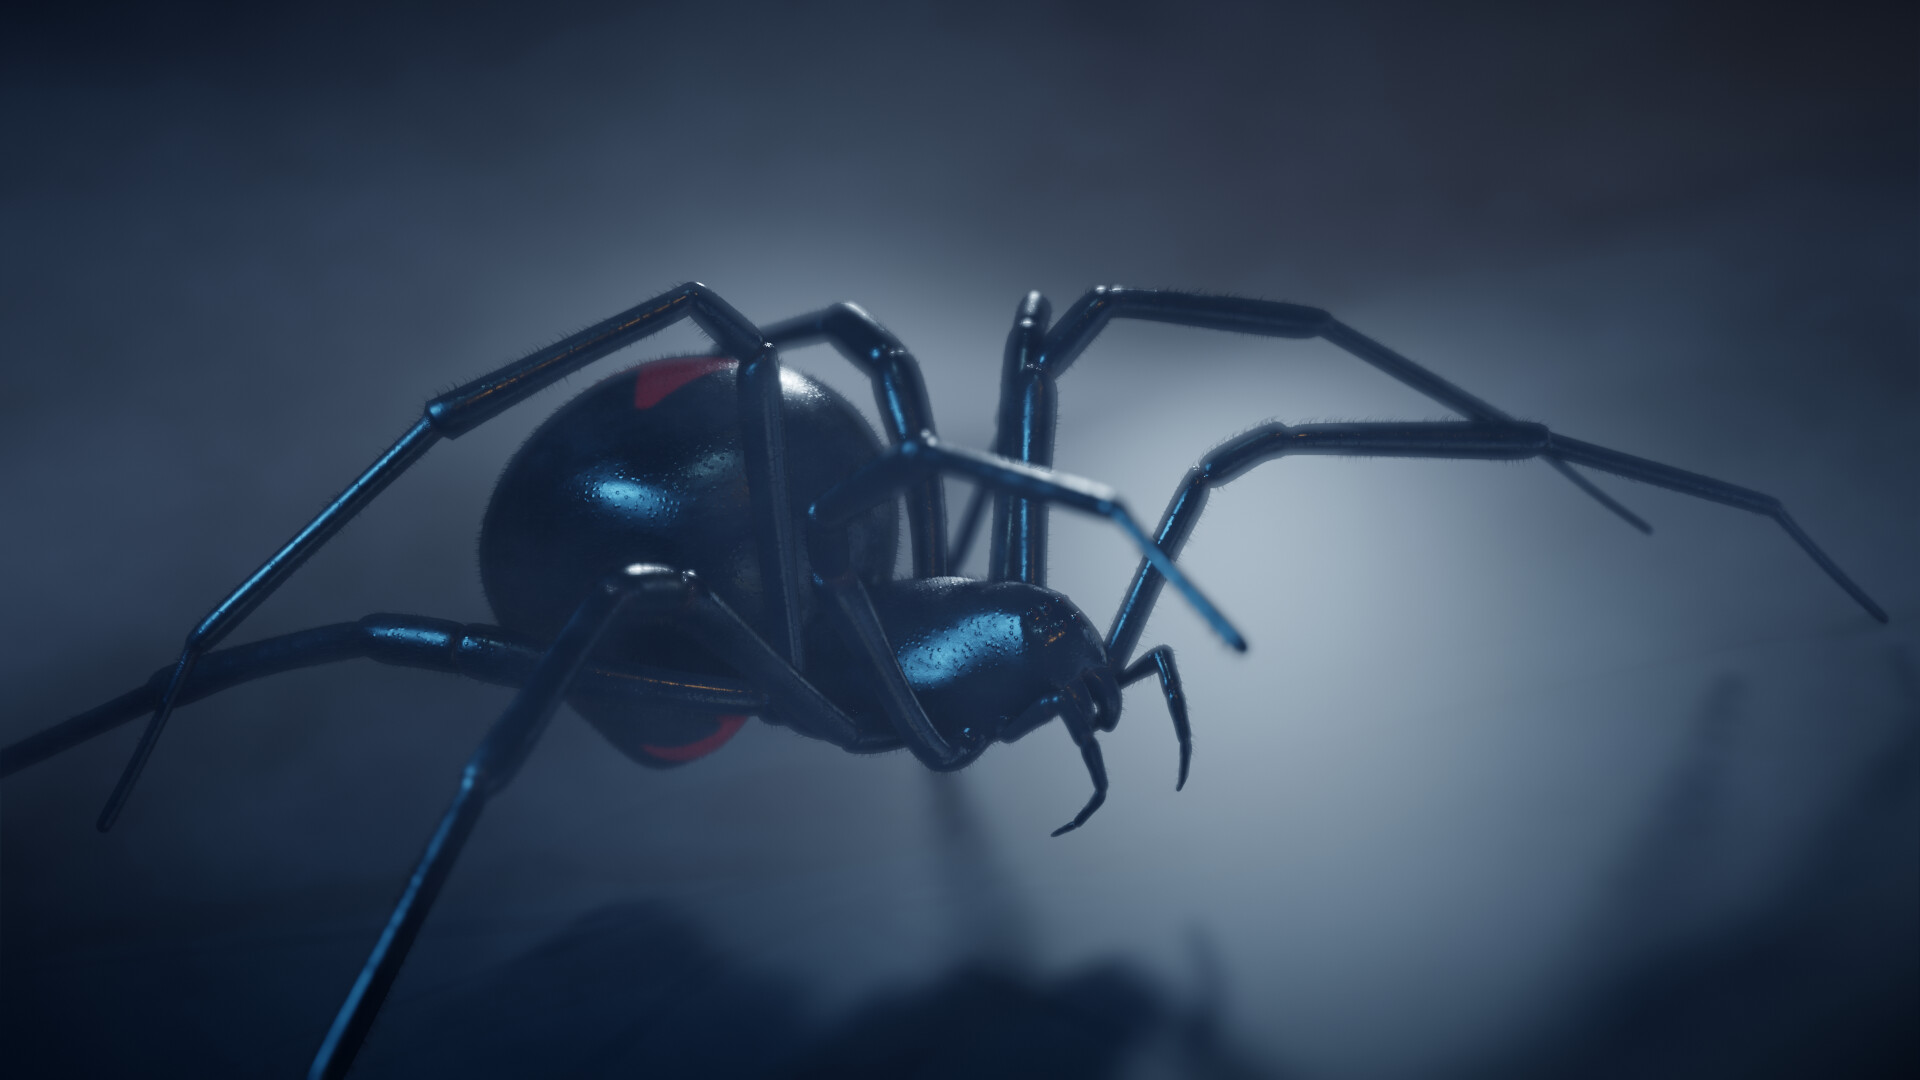 ArtStation - Black widow spider